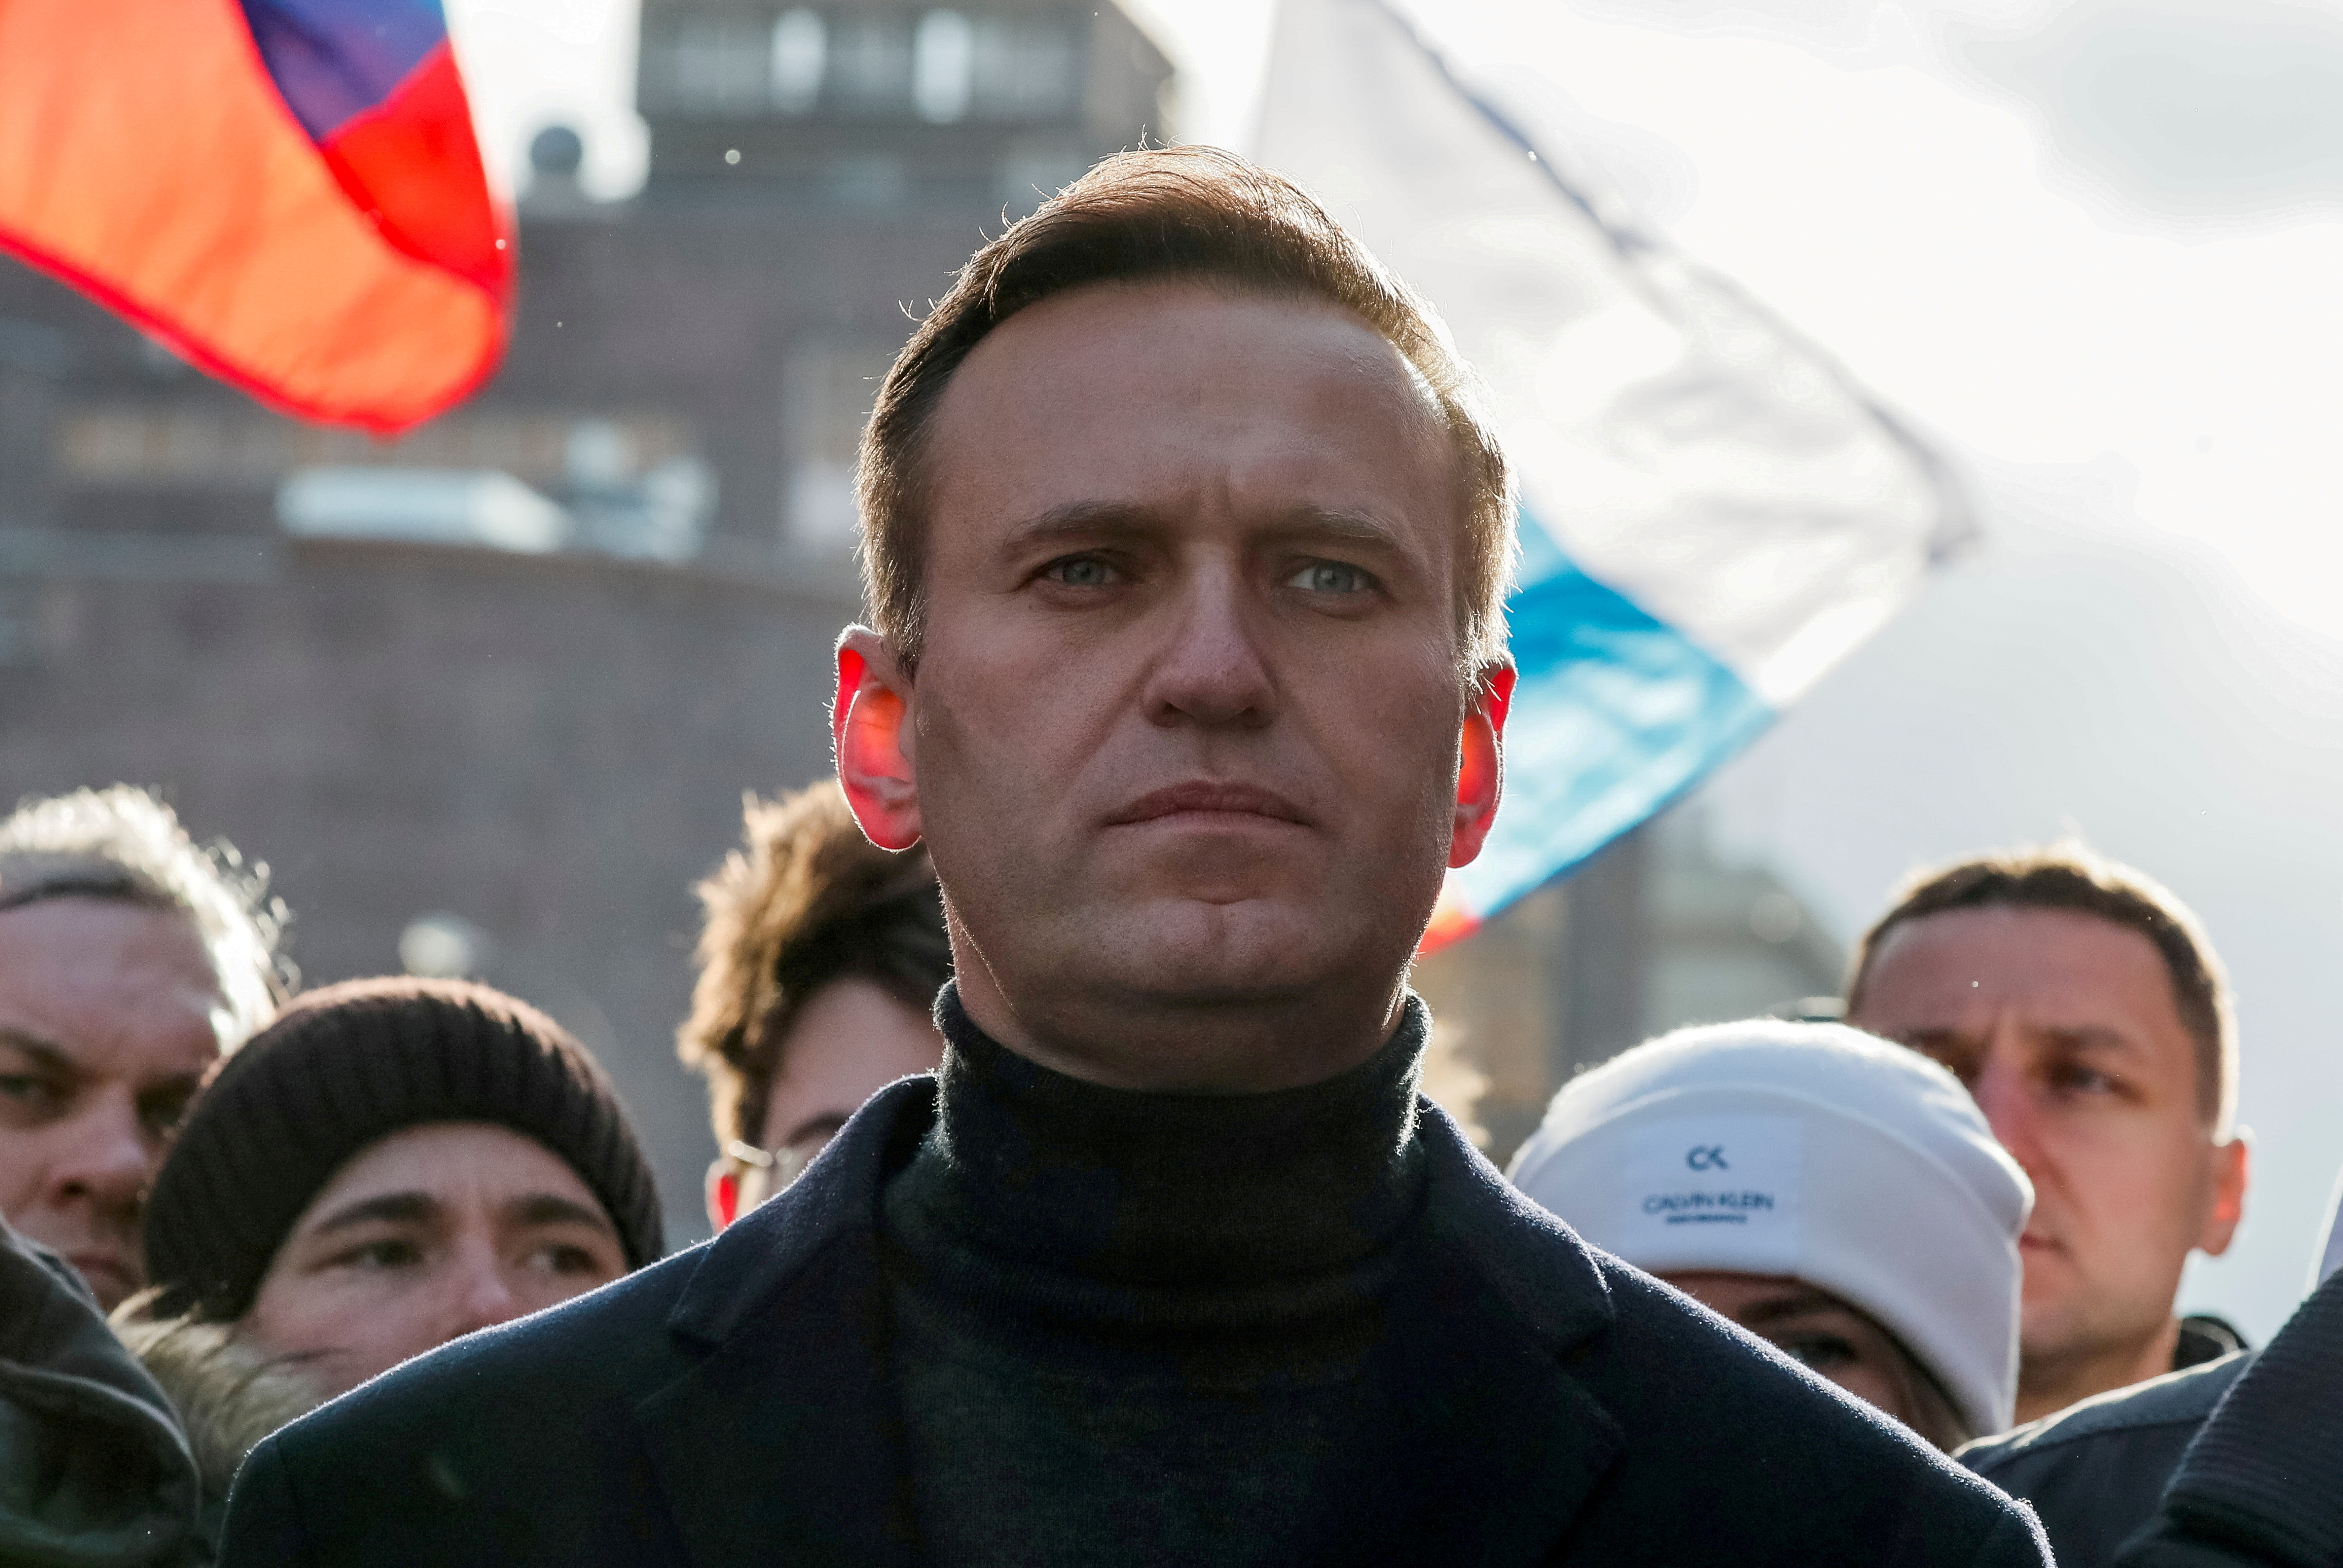 FOTO DE ARCHIVO: El político opositor ruso Alexei Navalny participa en una concentración para conmemorar el 5º aniversario del asesinato del político opositor Boris Nemtsov y para protestar contra las enmiendas propuestas a la constitución del país, en Moscú, Rusia 29 de febrero de 2020. REUTERS/Shamil Zhumatov